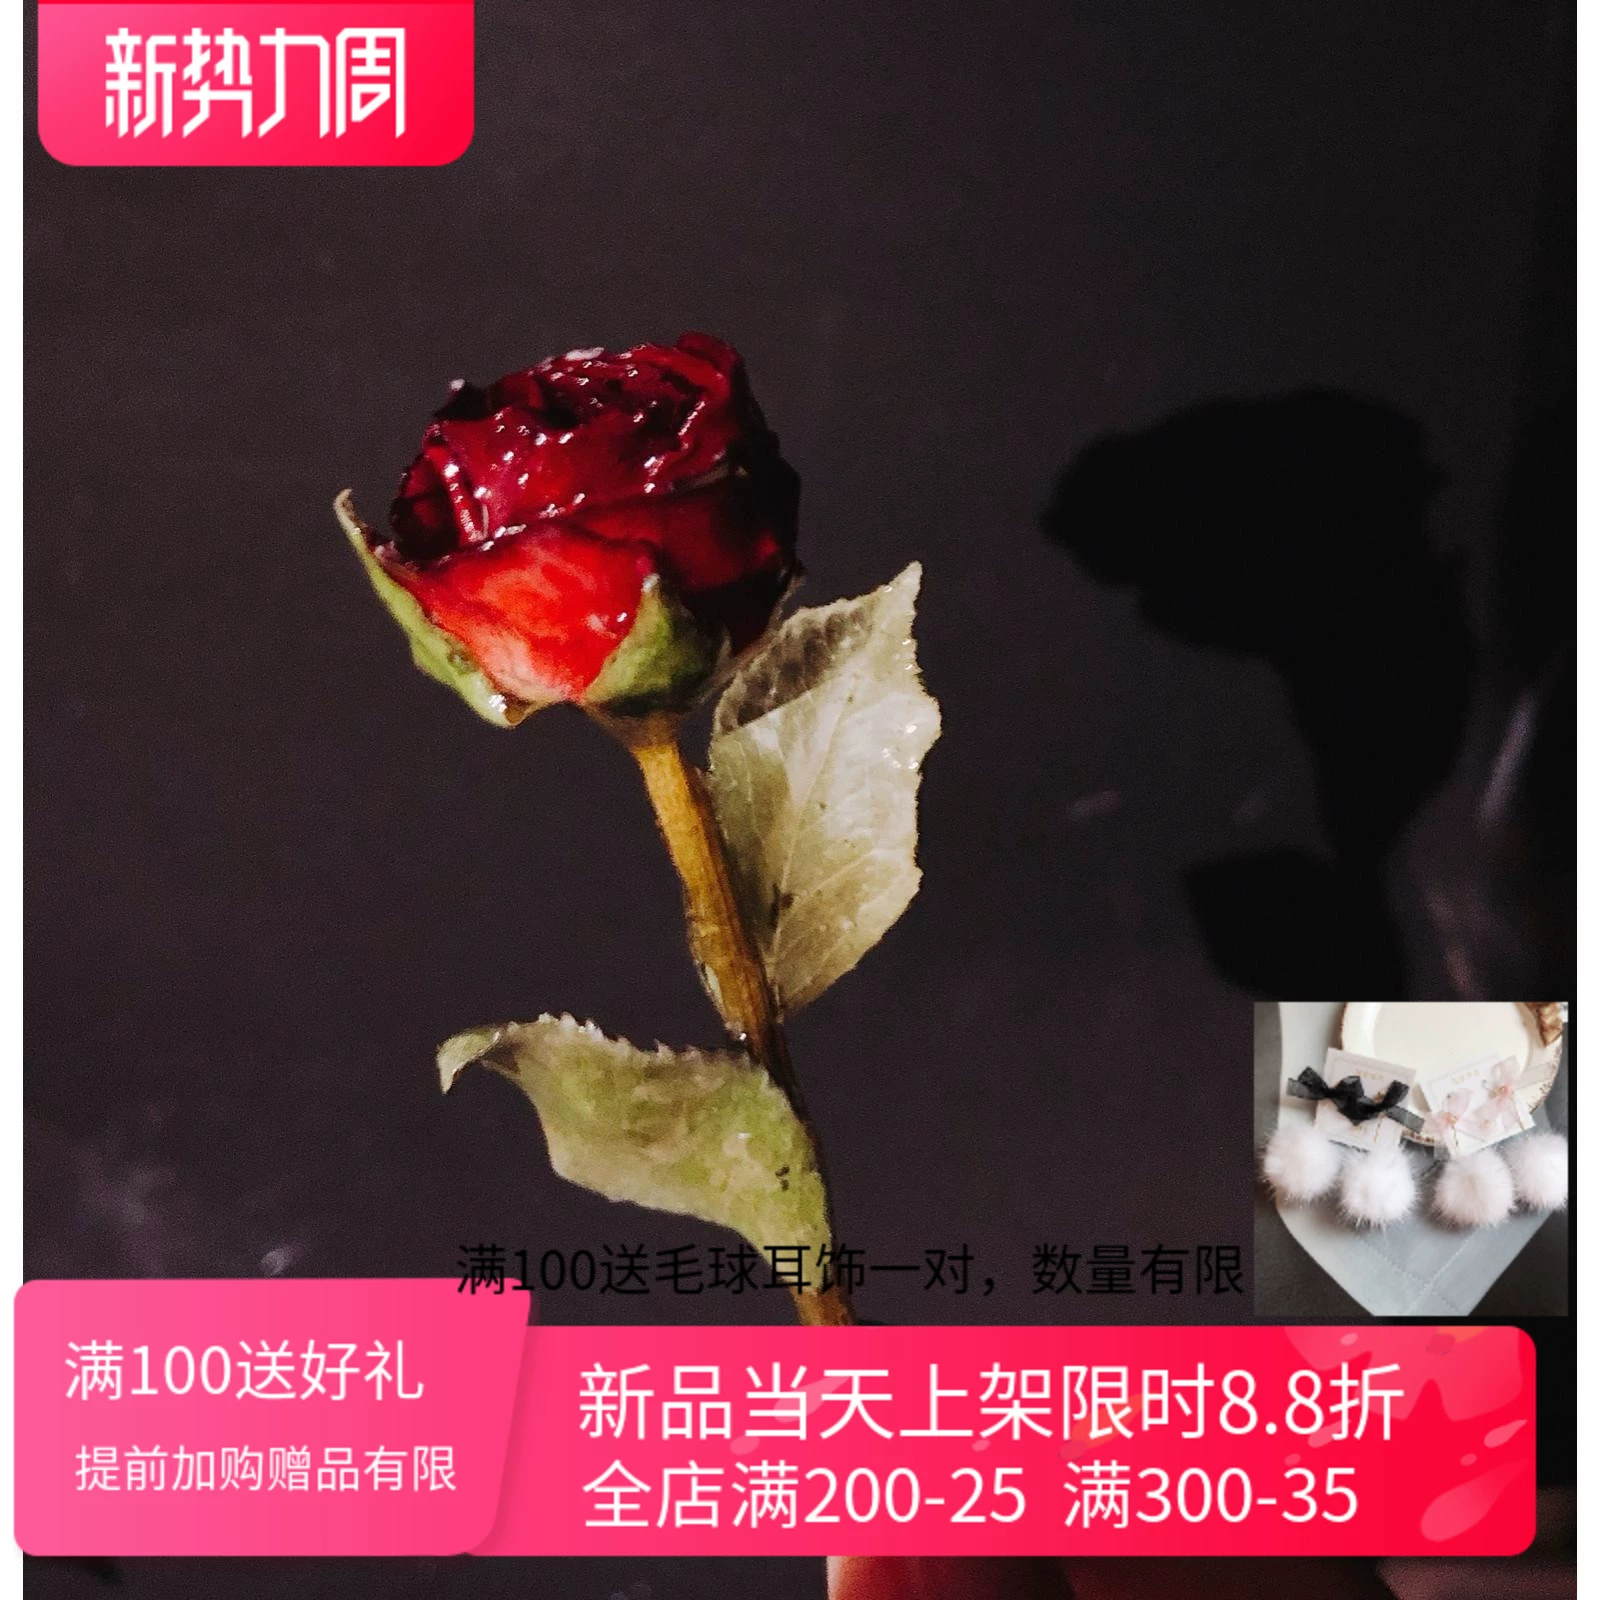 Hua Mizuki gỗ làm bằng tay hoàng tử nhỏ trâm cài hoa thật pin khóa phù hợp với áo choàng phụ kiện khăn choàng phụ nữ - Trâm cài